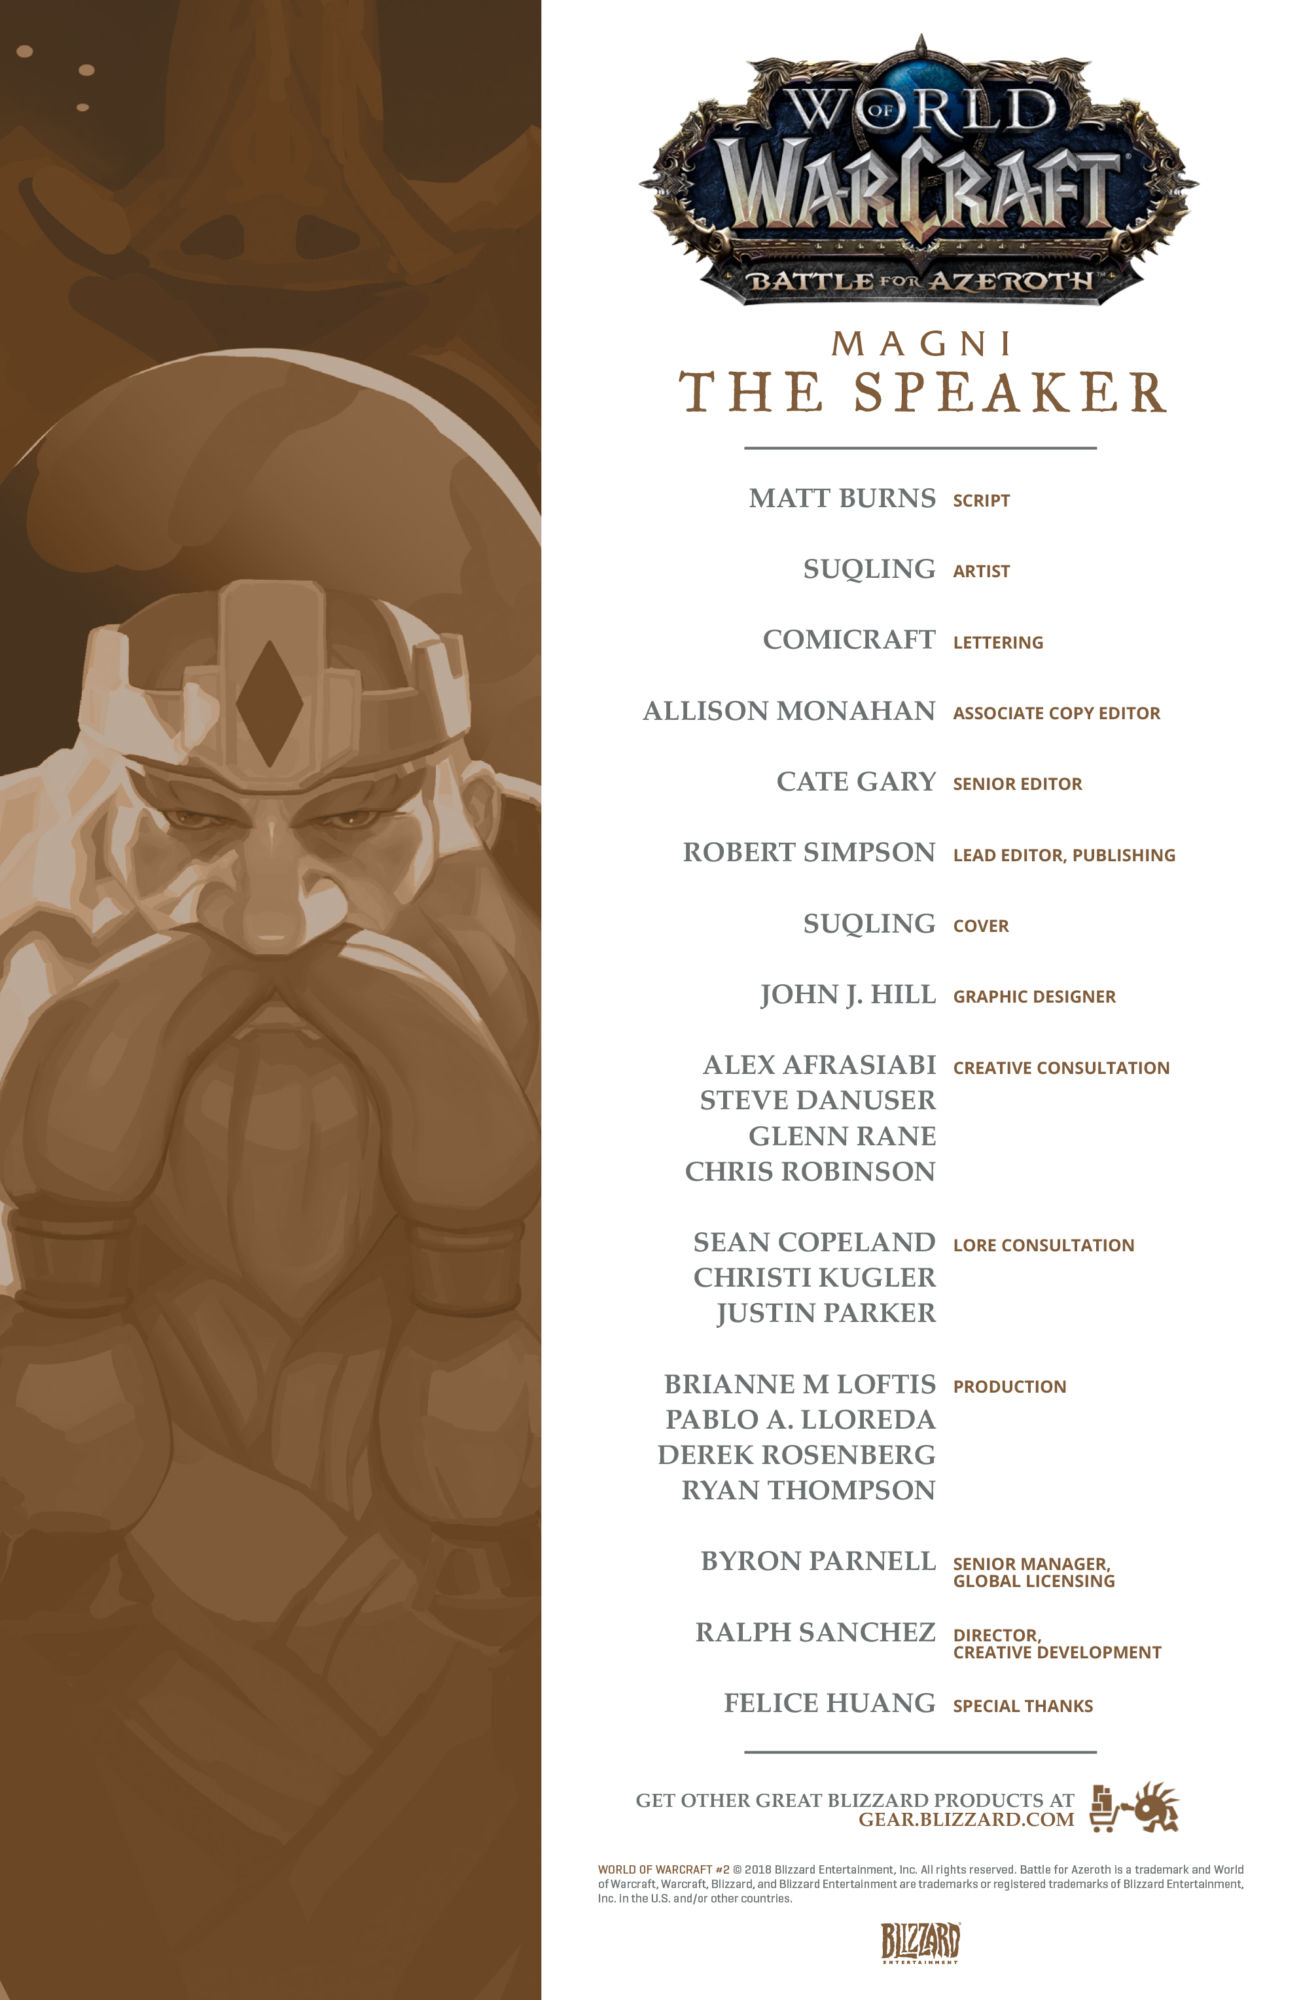 WoW_Magni-The-Speaker_EN-Credits.jpg#mai